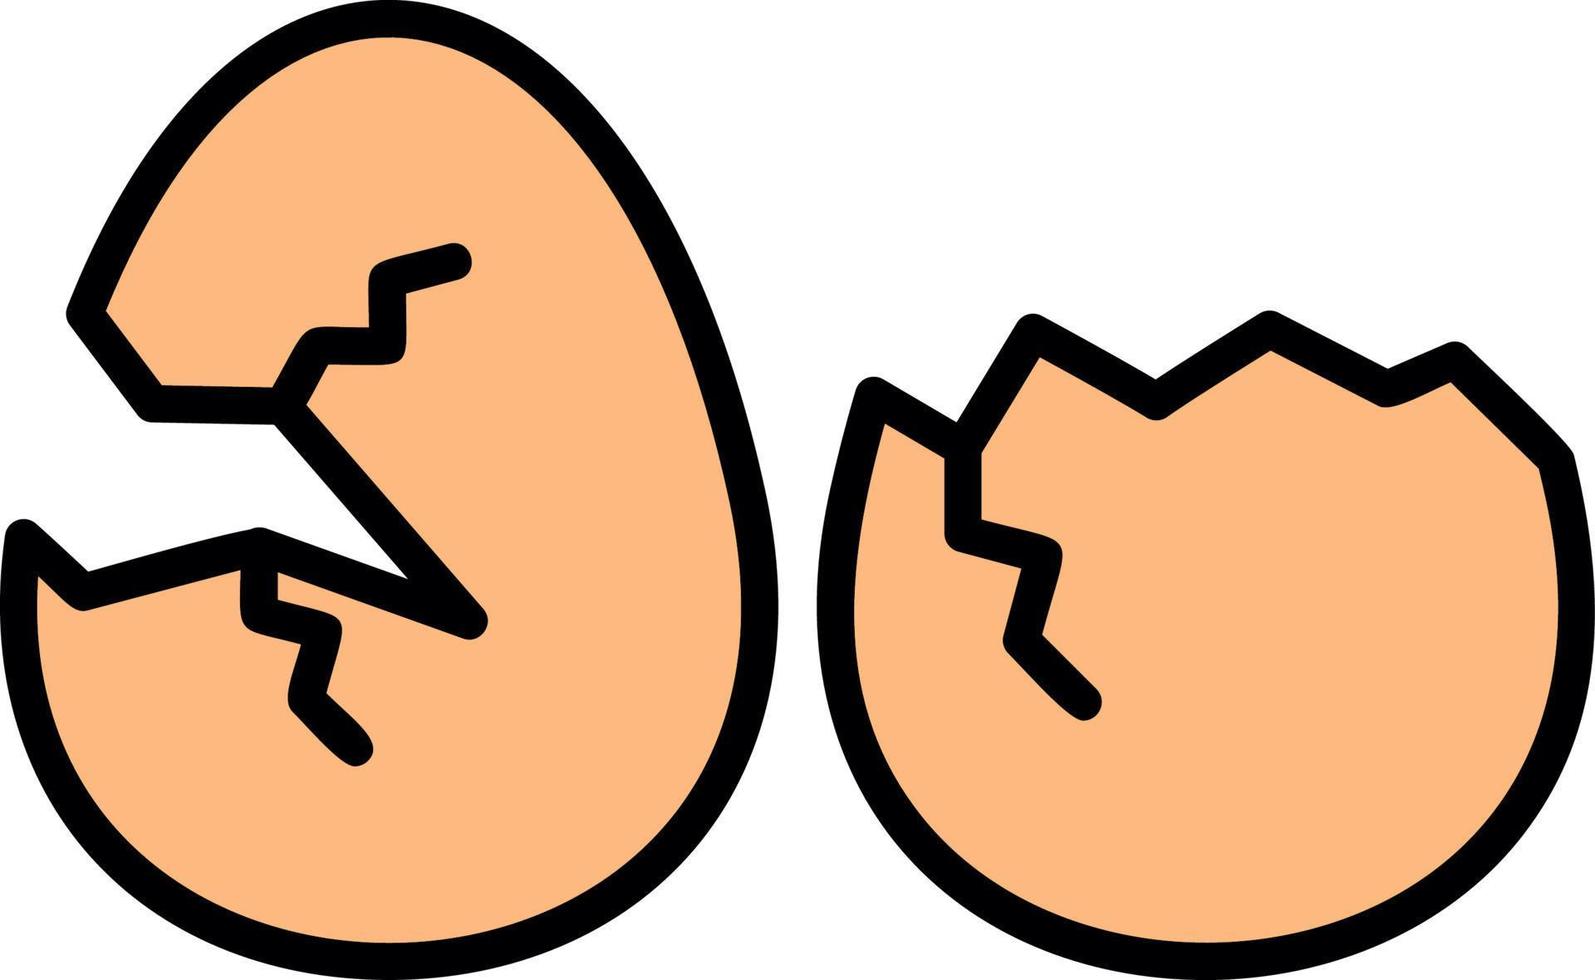 Broken Eggs Creative Icon Design vector